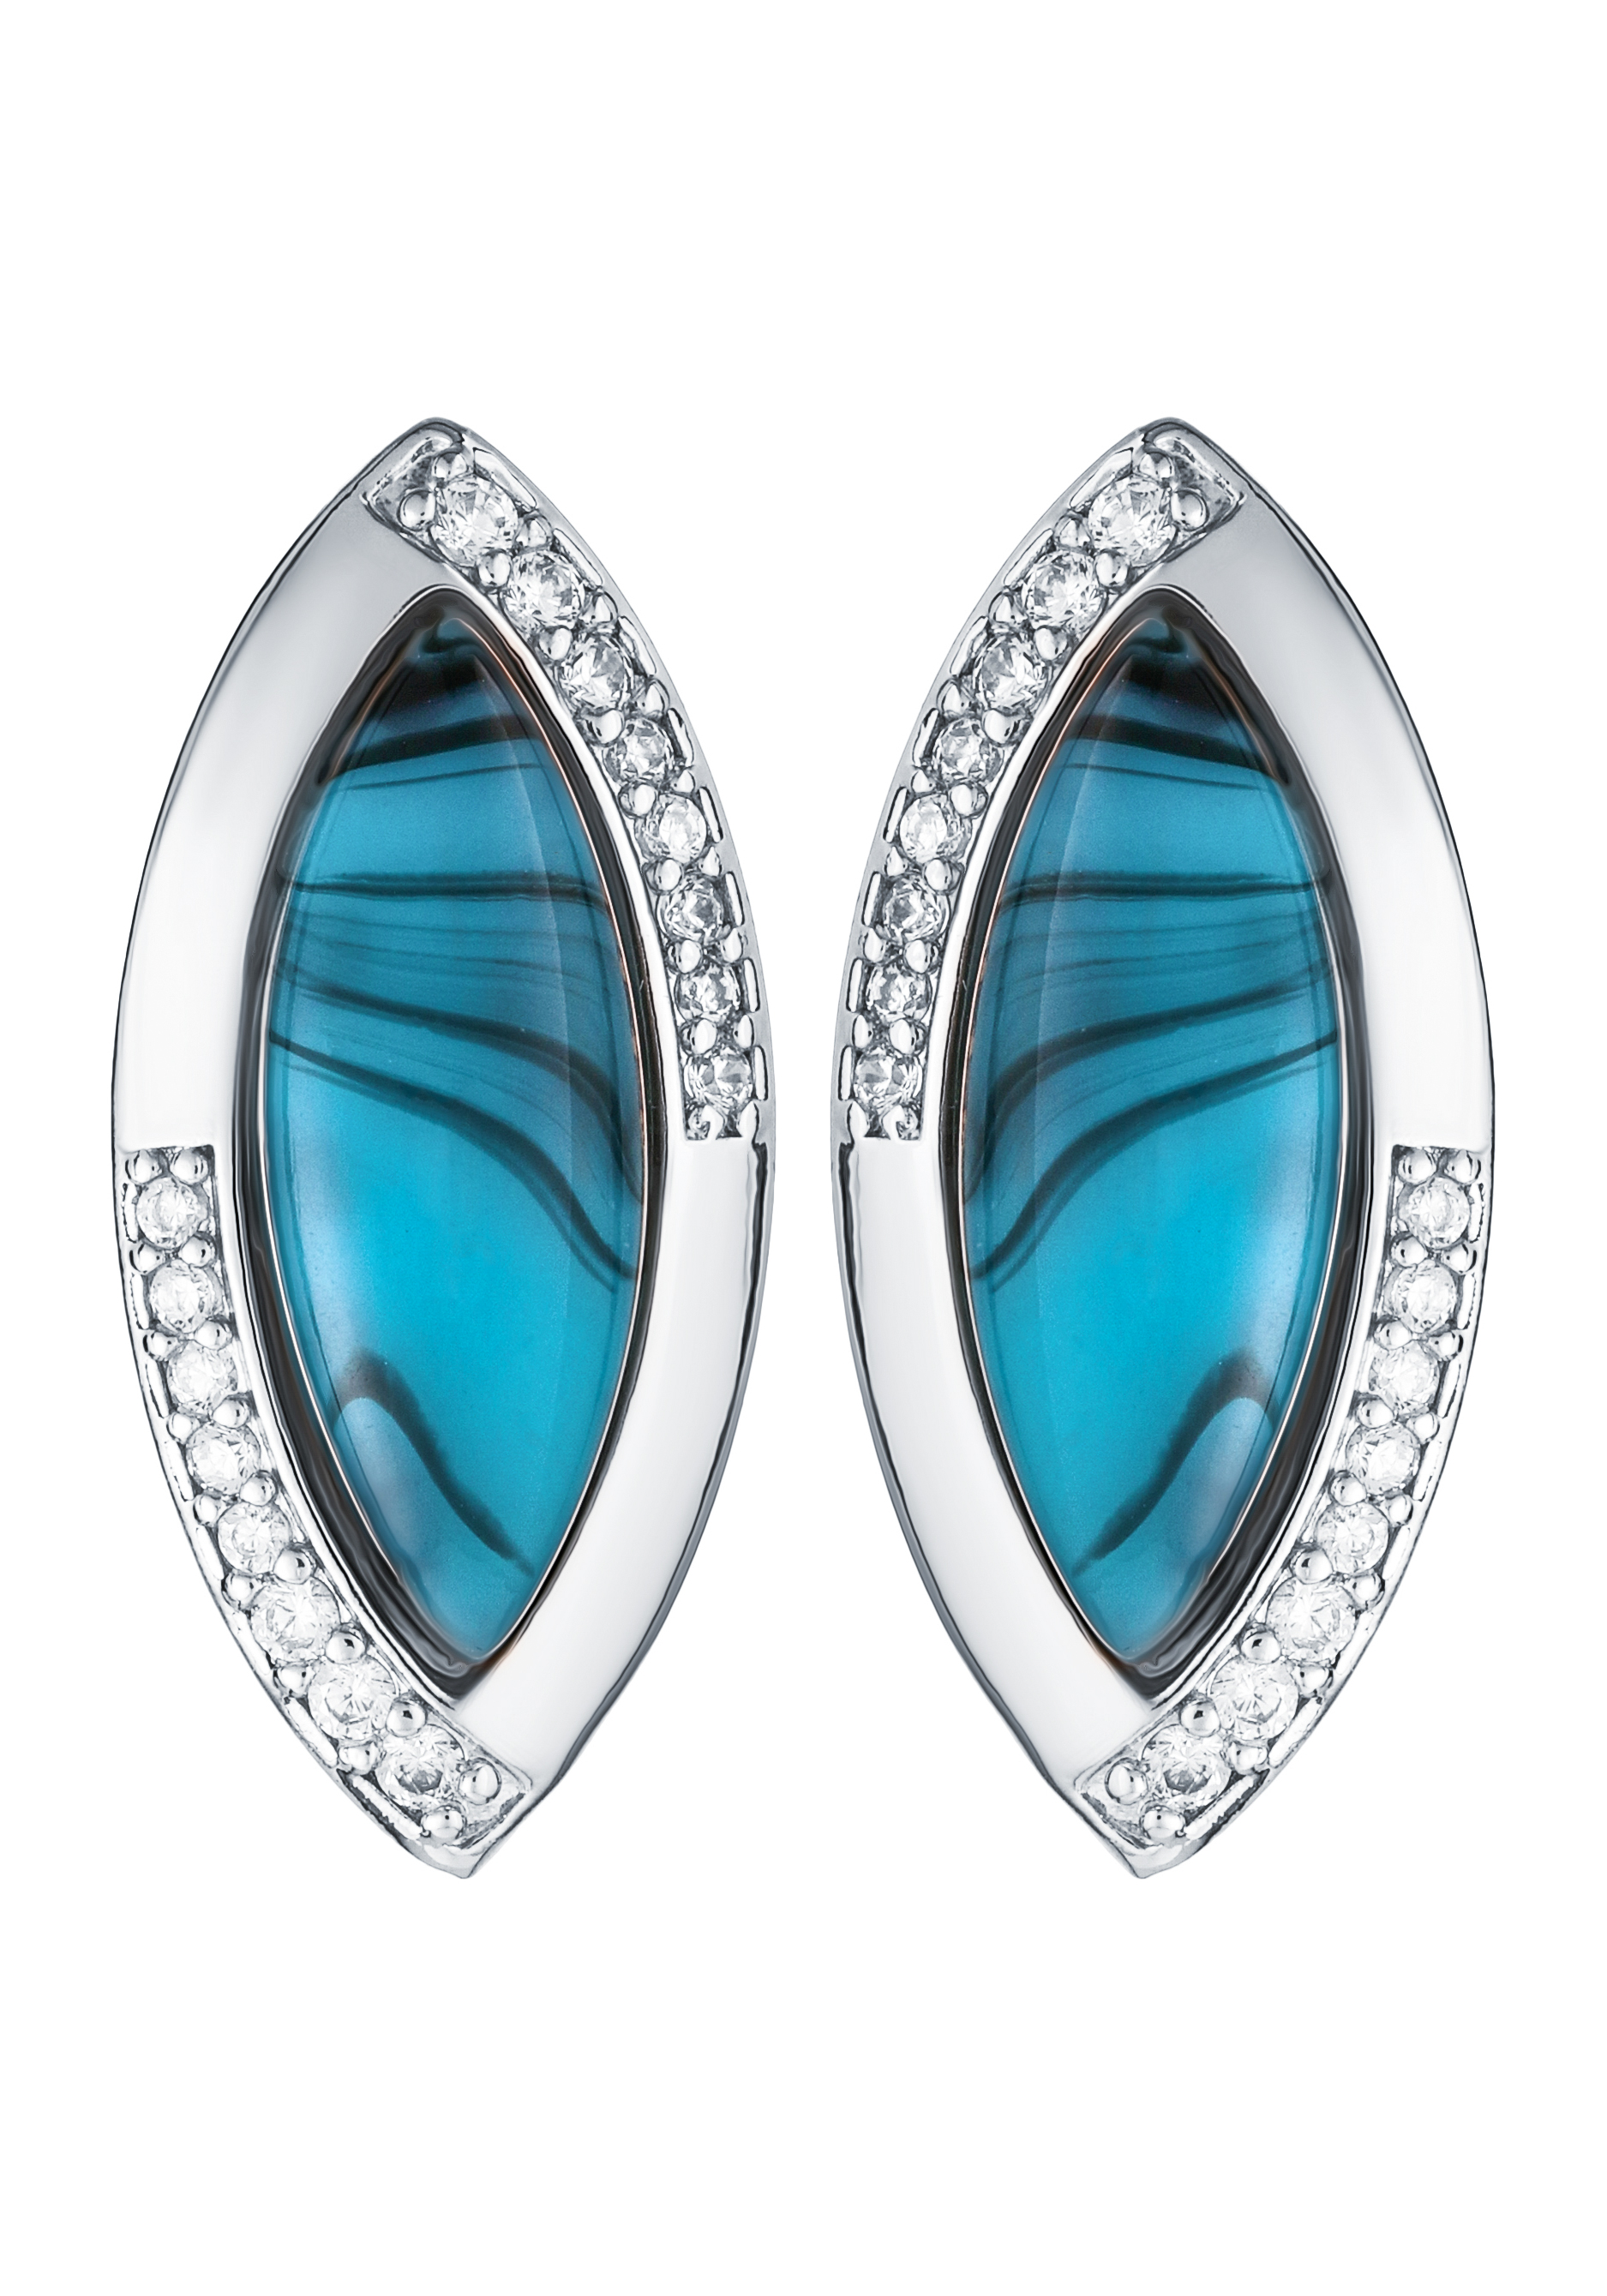 Комплект "Невесомый шлейф" BO.GEMS, цвет голубой, размер 17 перстень - фото 10